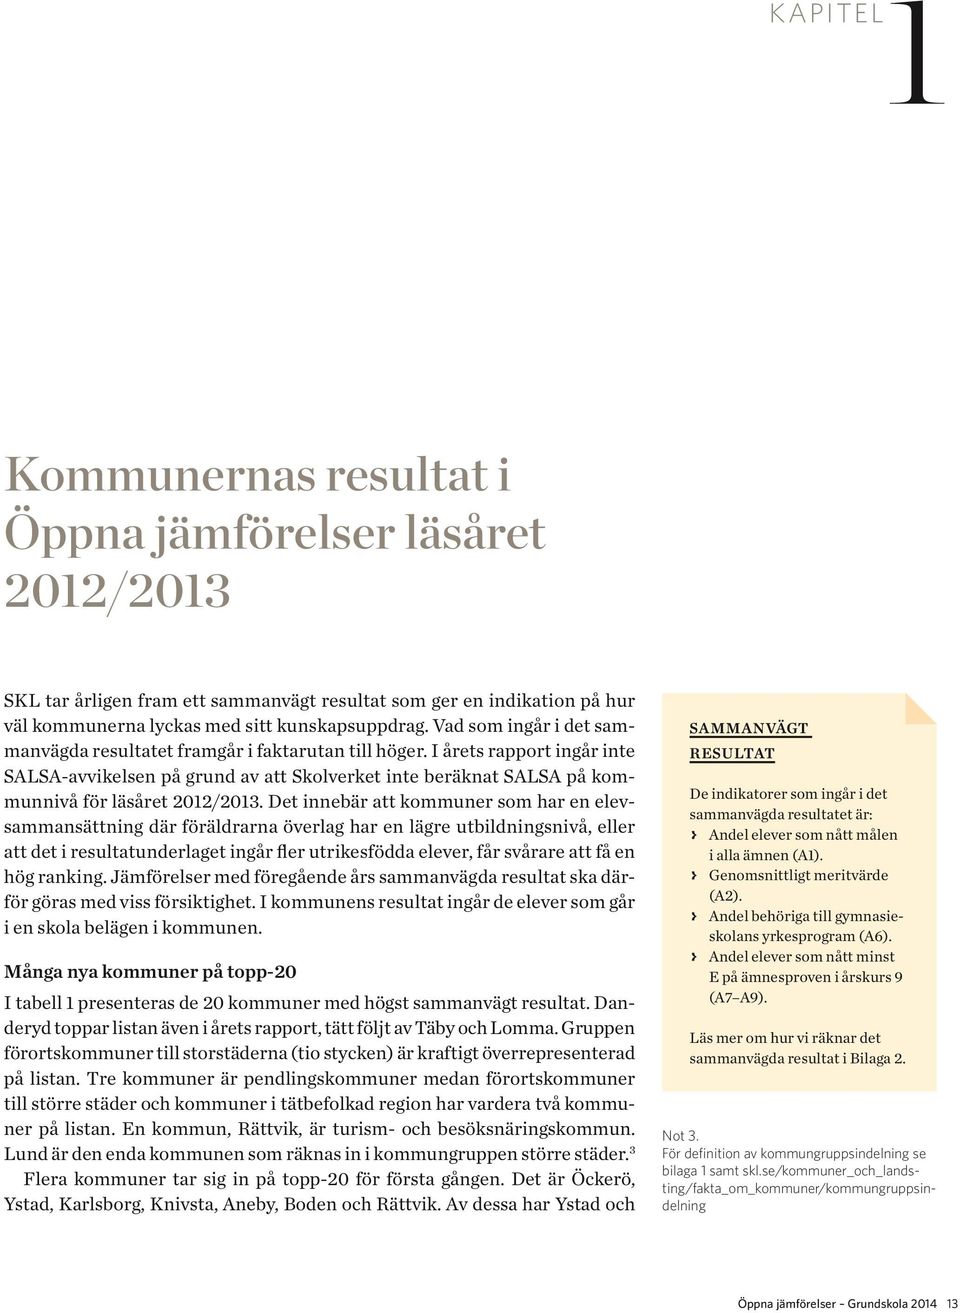 I årets rapport ingår inte SALSA-avvikelsen på grund av att Skolverket inte beräknat SALSA på kommunnivå för läsåret 2012/2013.